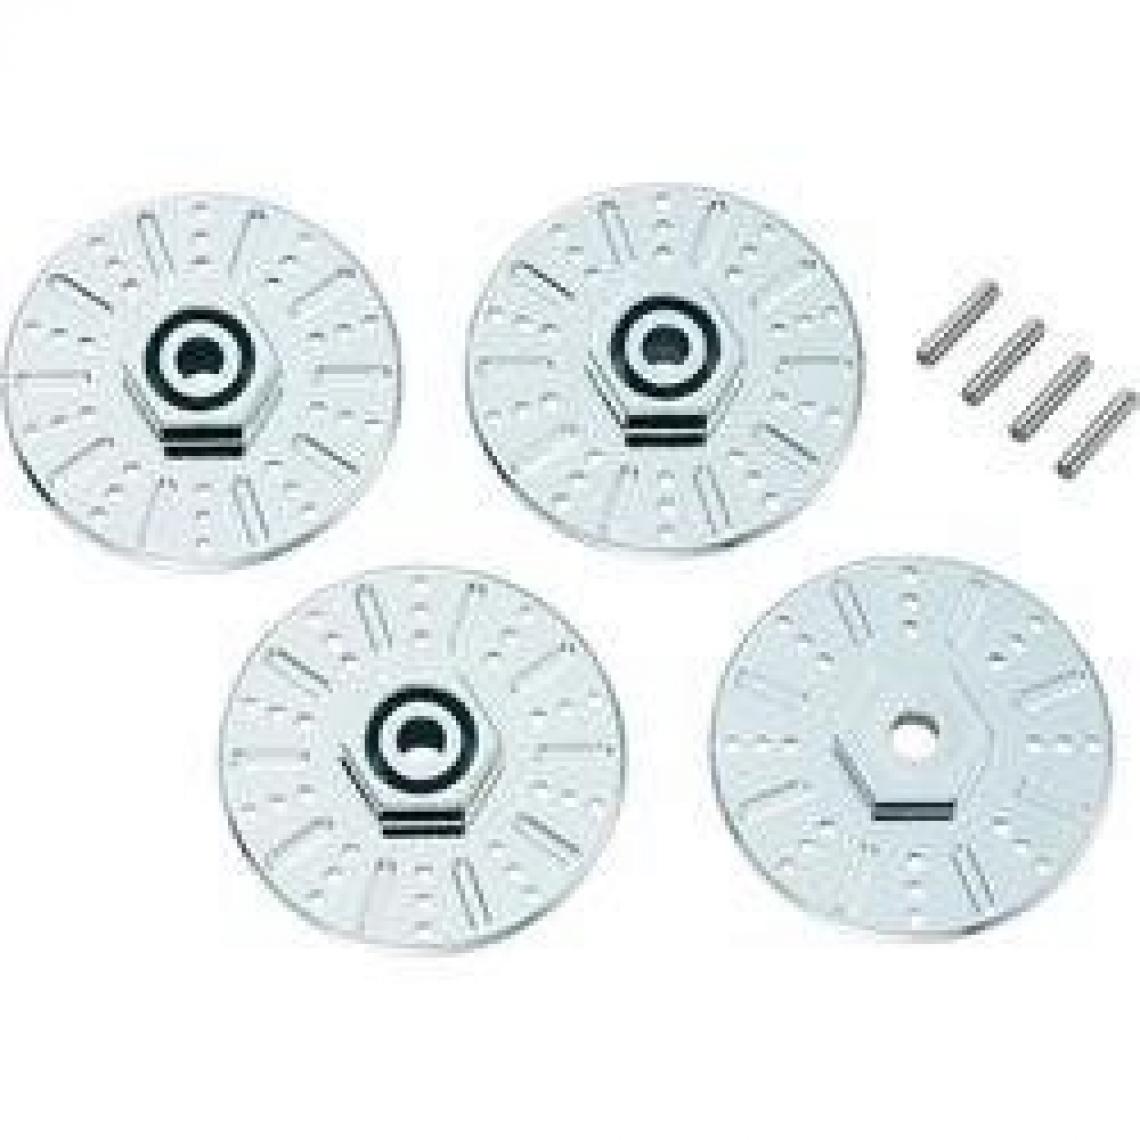 Inconnu - Imitation de disques de frein 1:10 avec élargissement de voie 5 mm - Accessoires et pièces